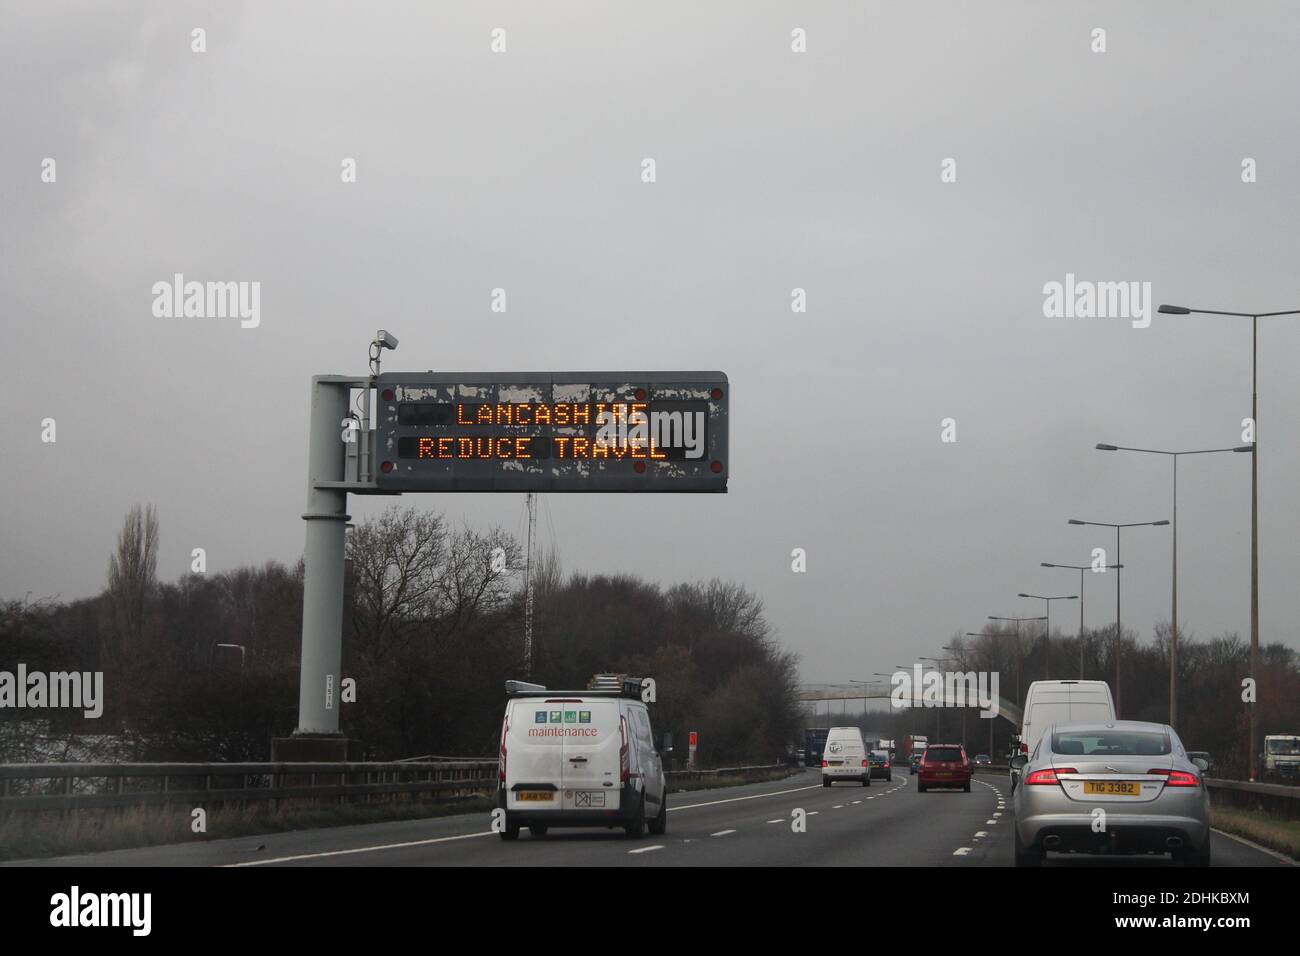 Panneau d'autoroute M6 vers le nord Lancashire réduire les déplacements, panneau pour décourager les déplacements inutiles pendant la pandémie Covid Banque D'Images